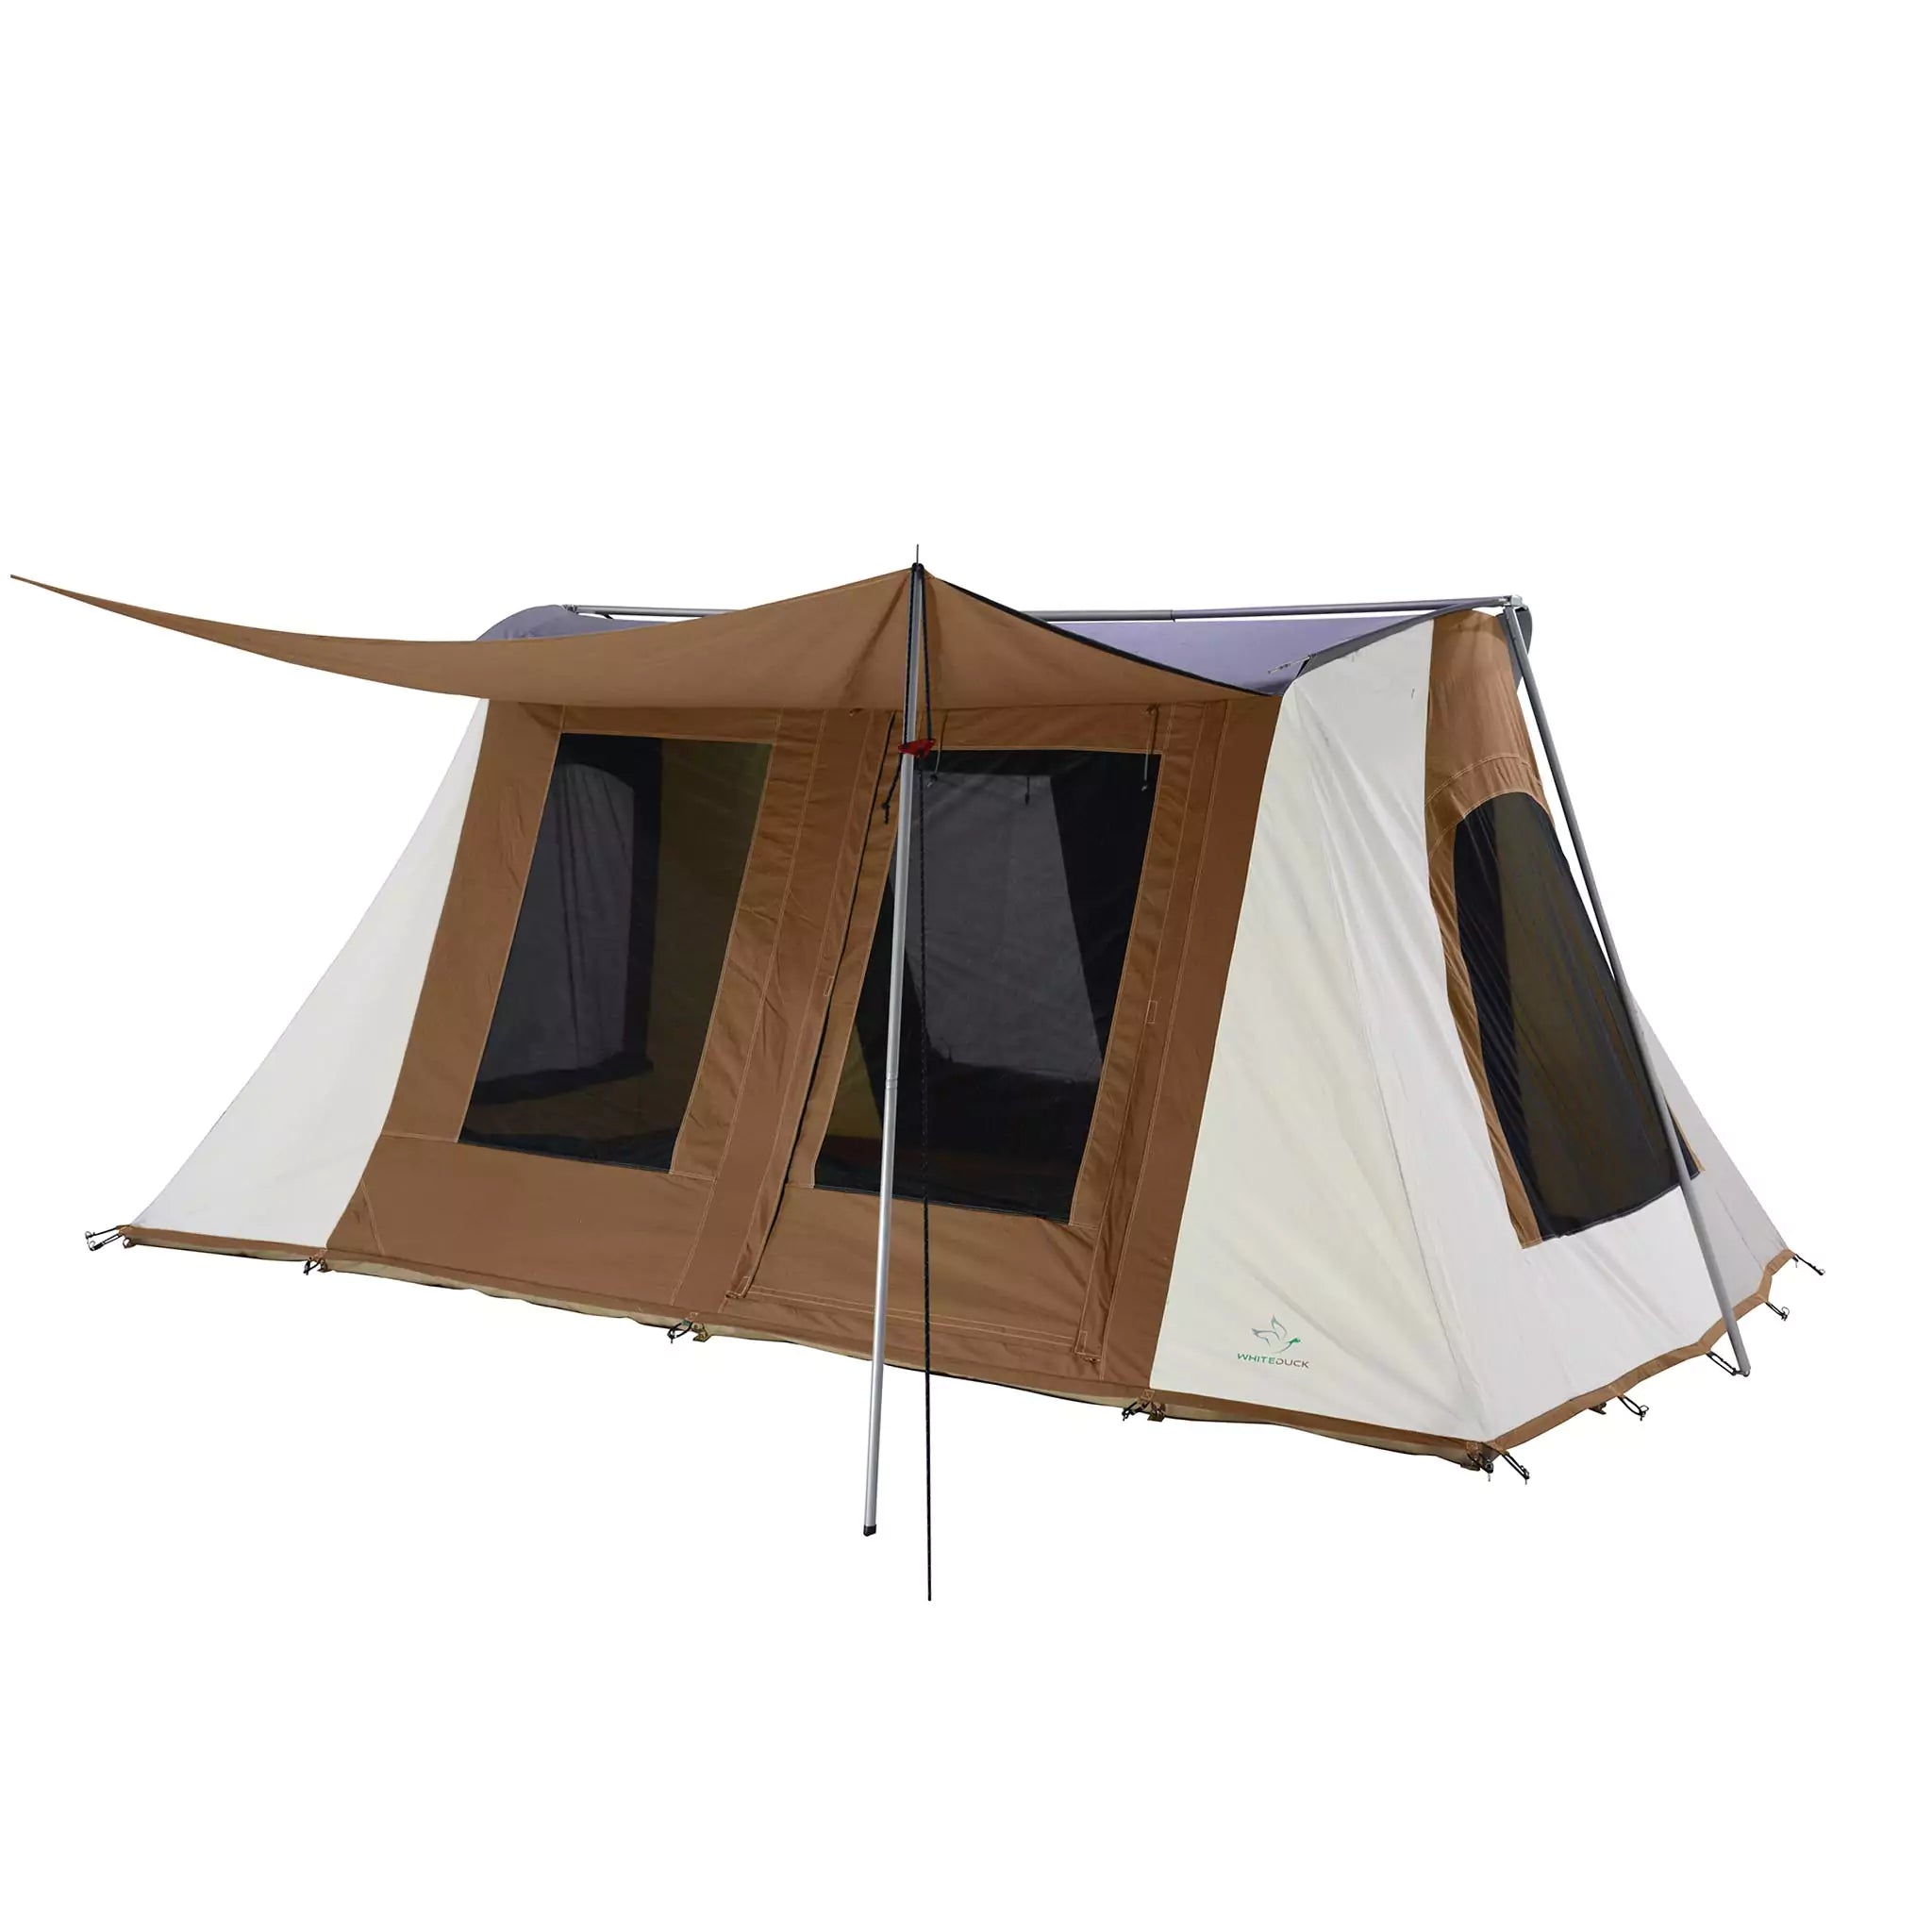 10’x14’ Prota Canvas Tent, Deluxe